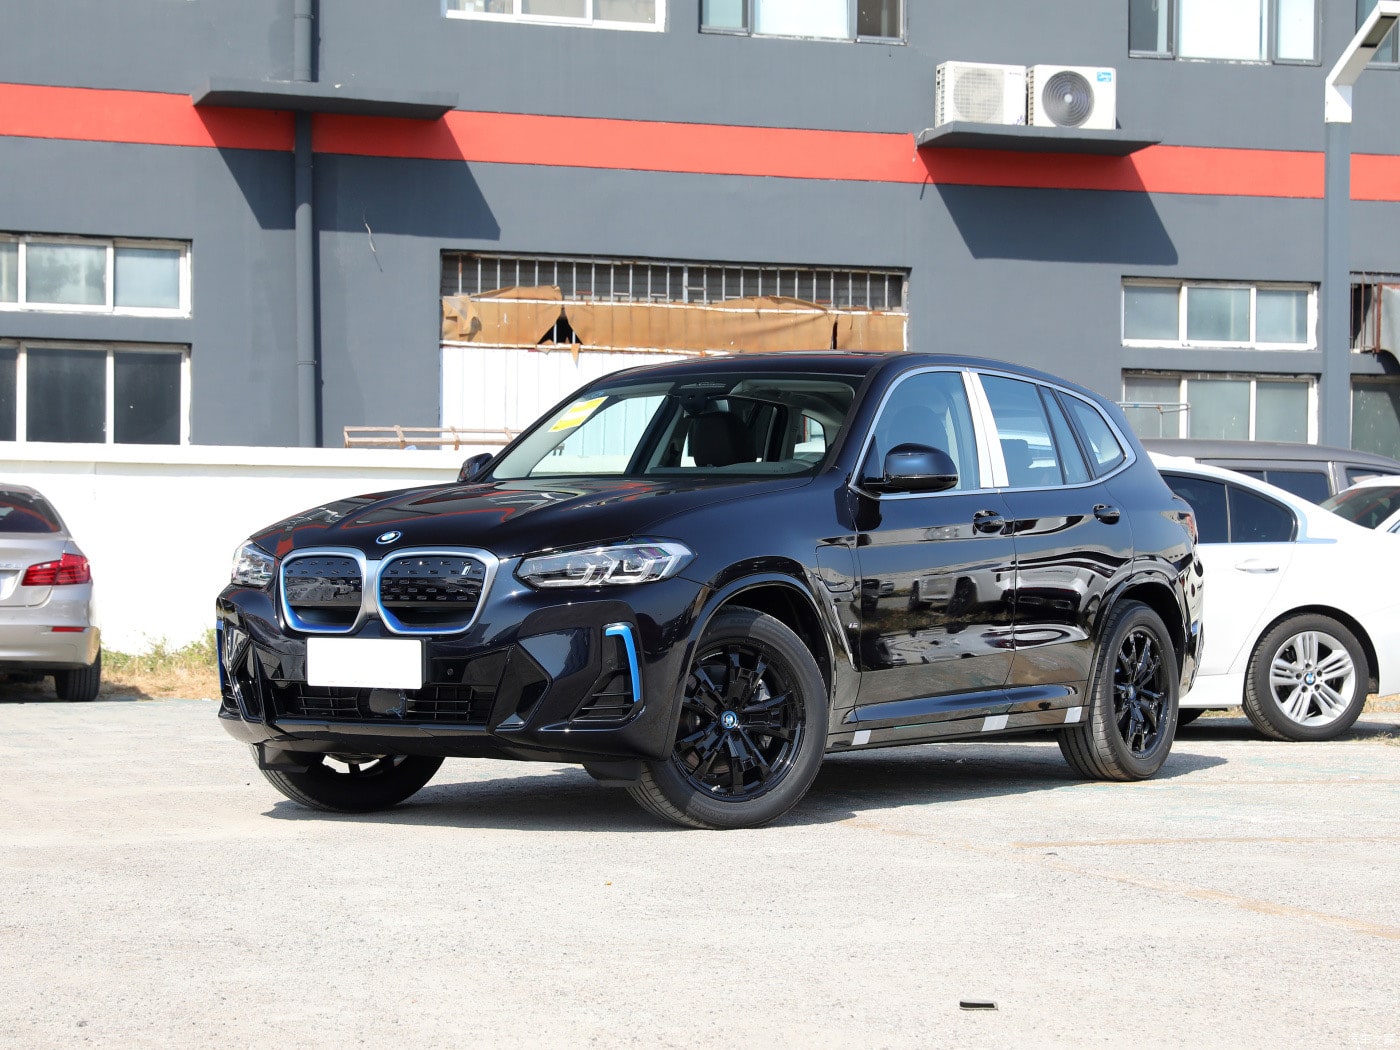 BMW ix3 Electric